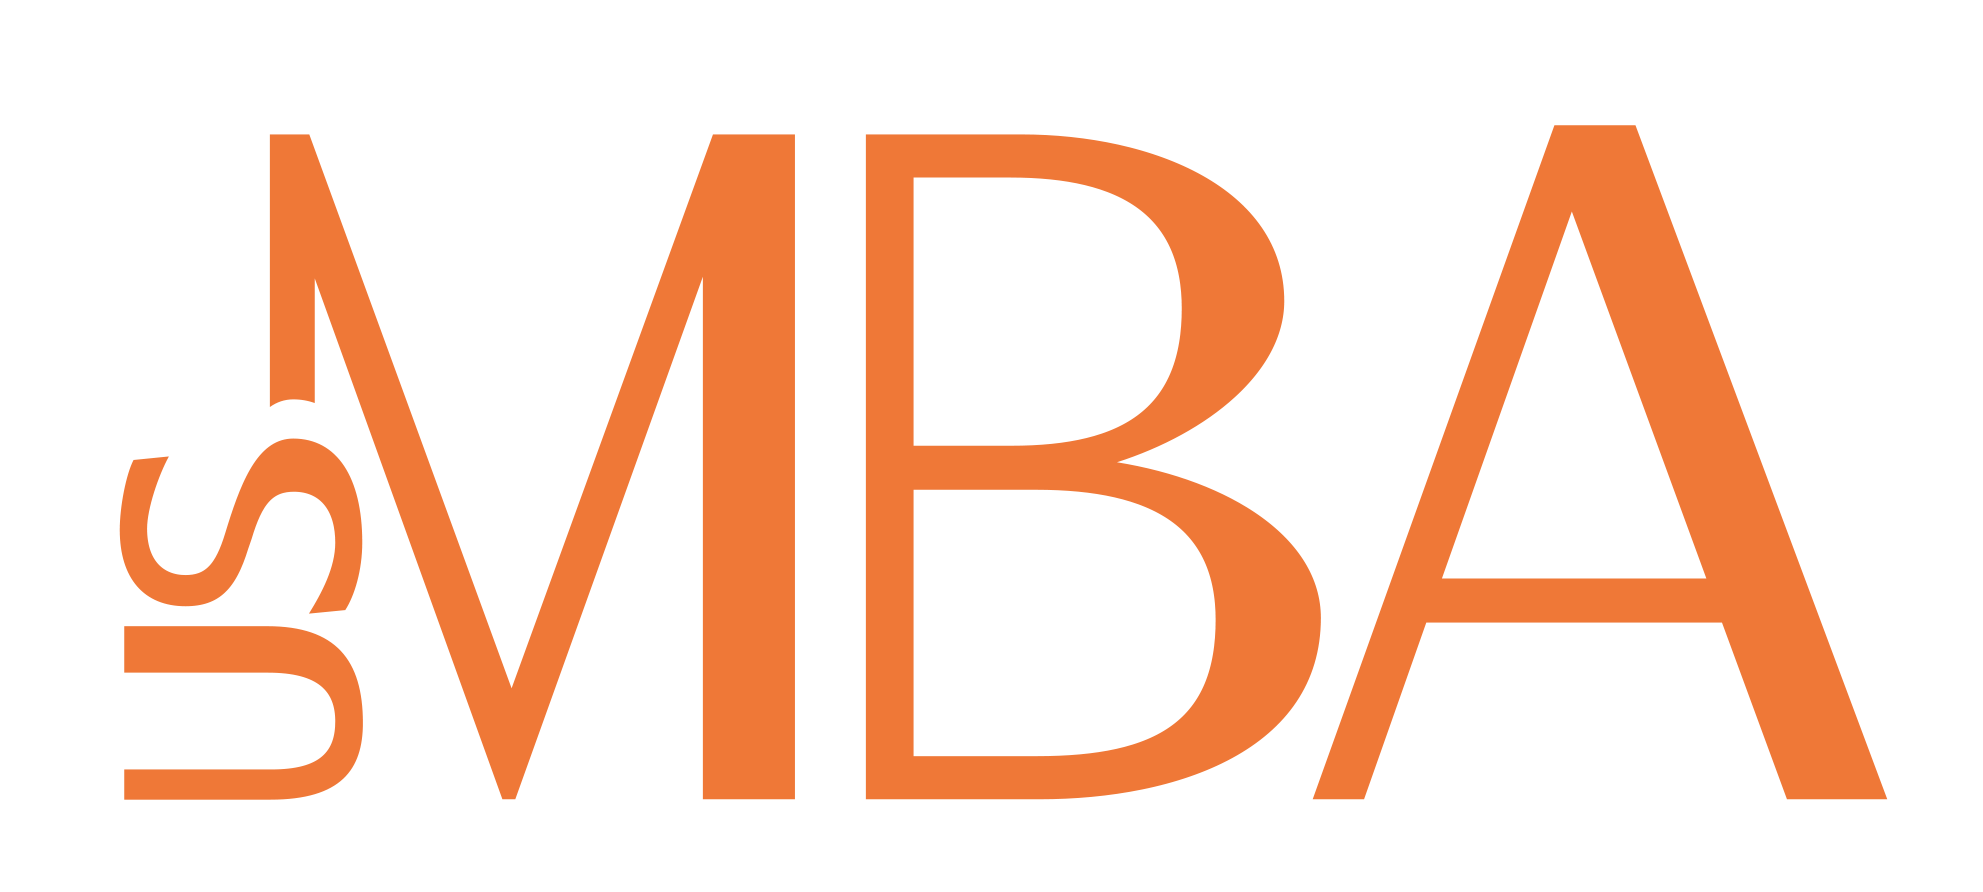 US-MBA logo